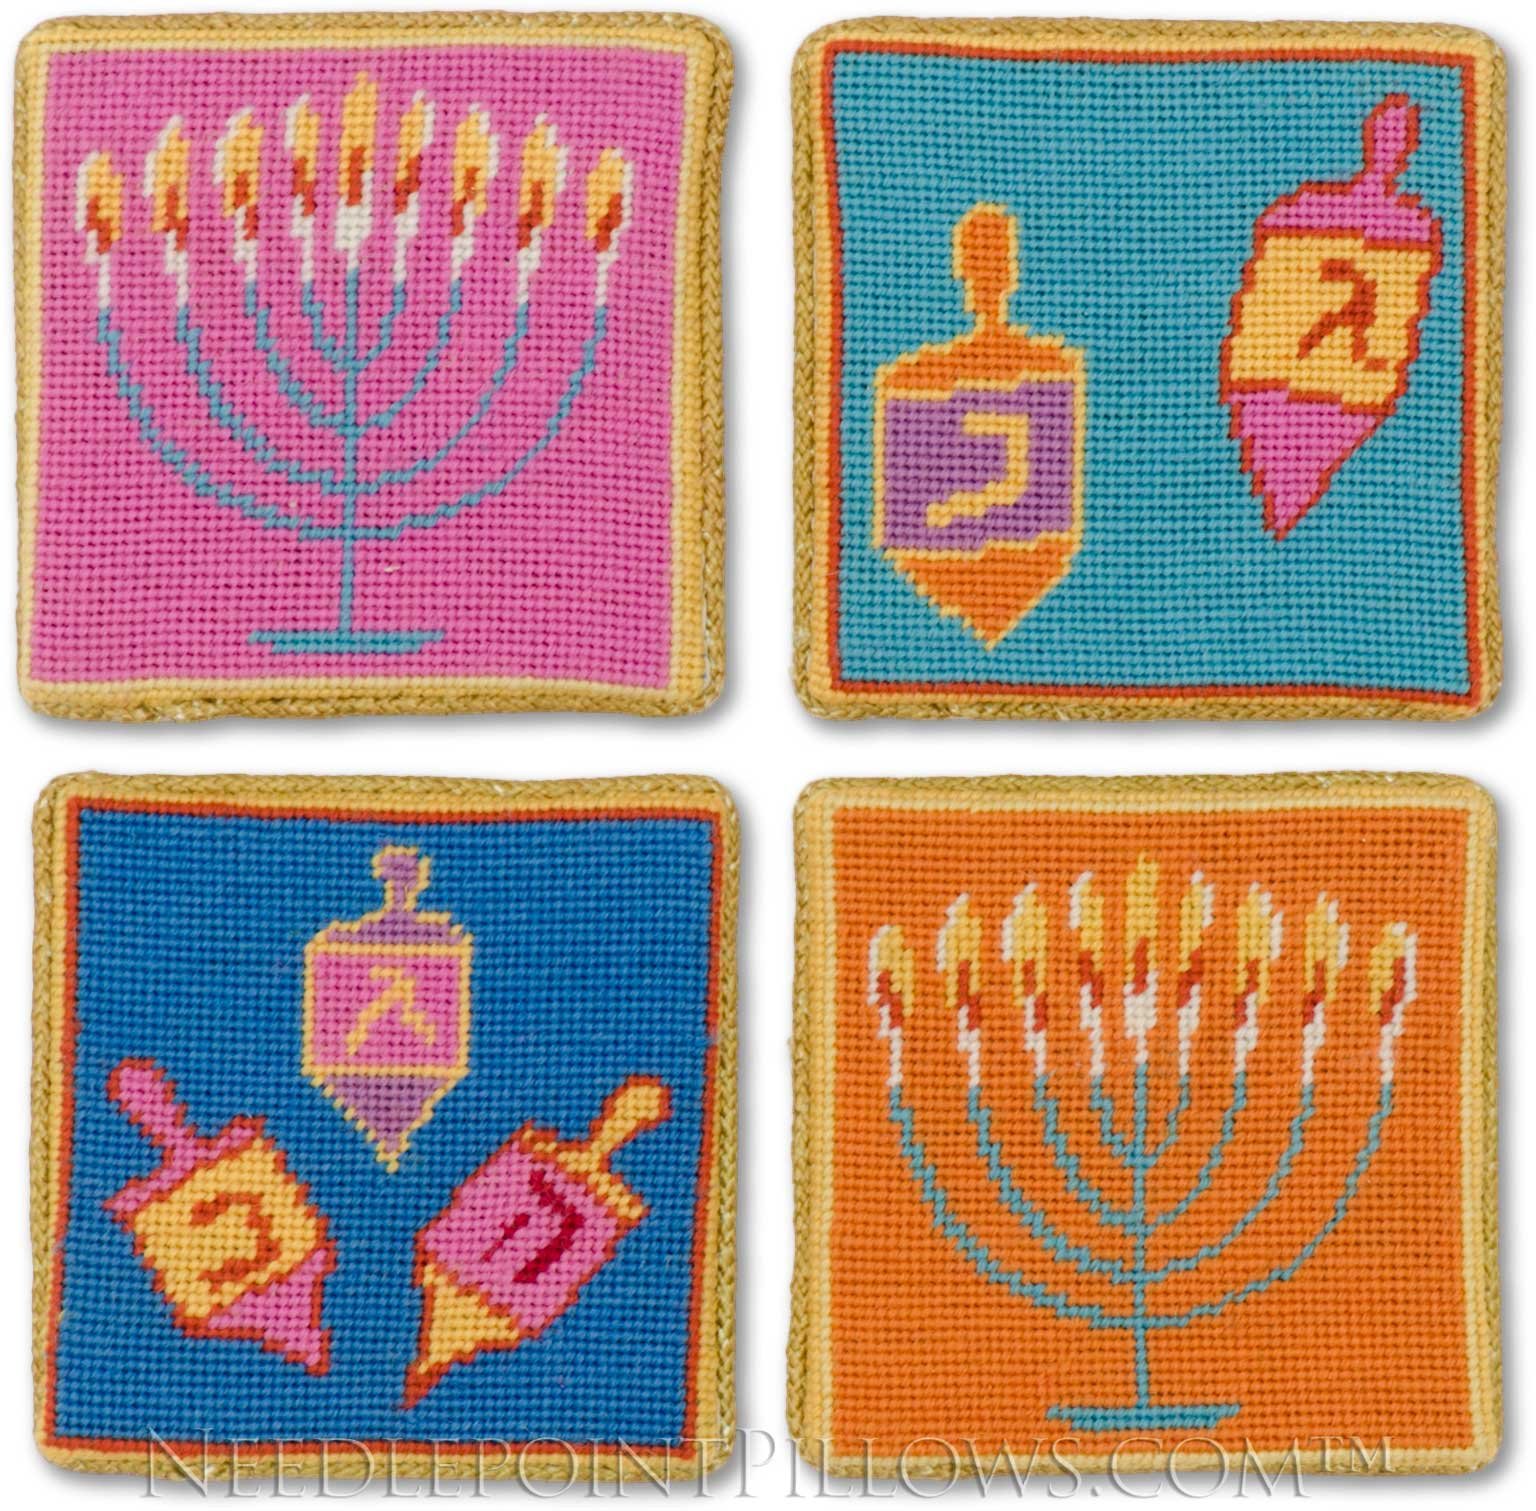 hannukah, Channukah, Dradles, Menorah, Jewish, Holiday Wallpaper